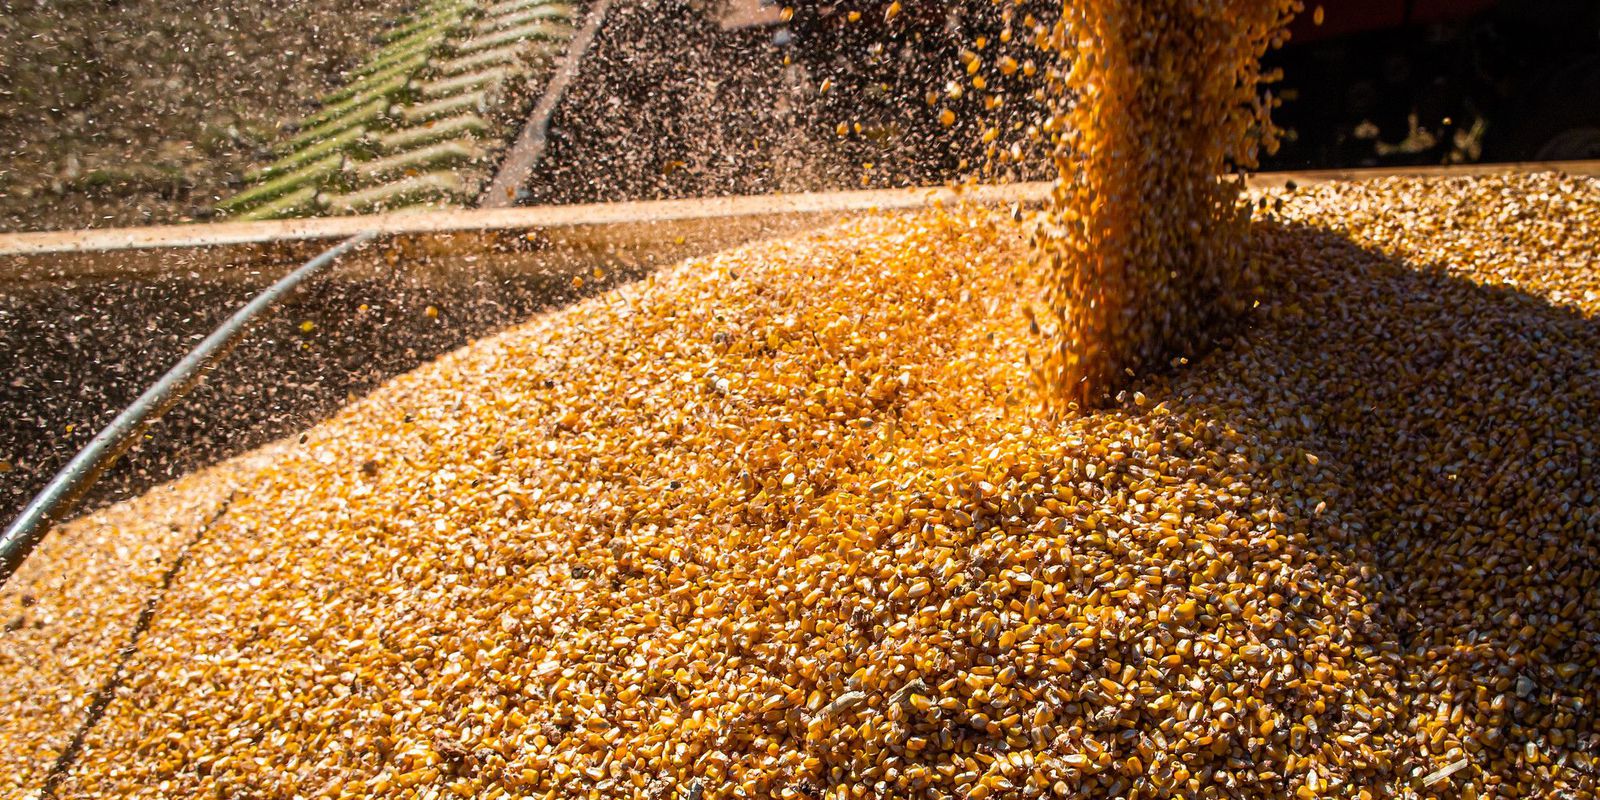 Com queda na produtividade média, safra de grãos deve ser menor – finanças brasil